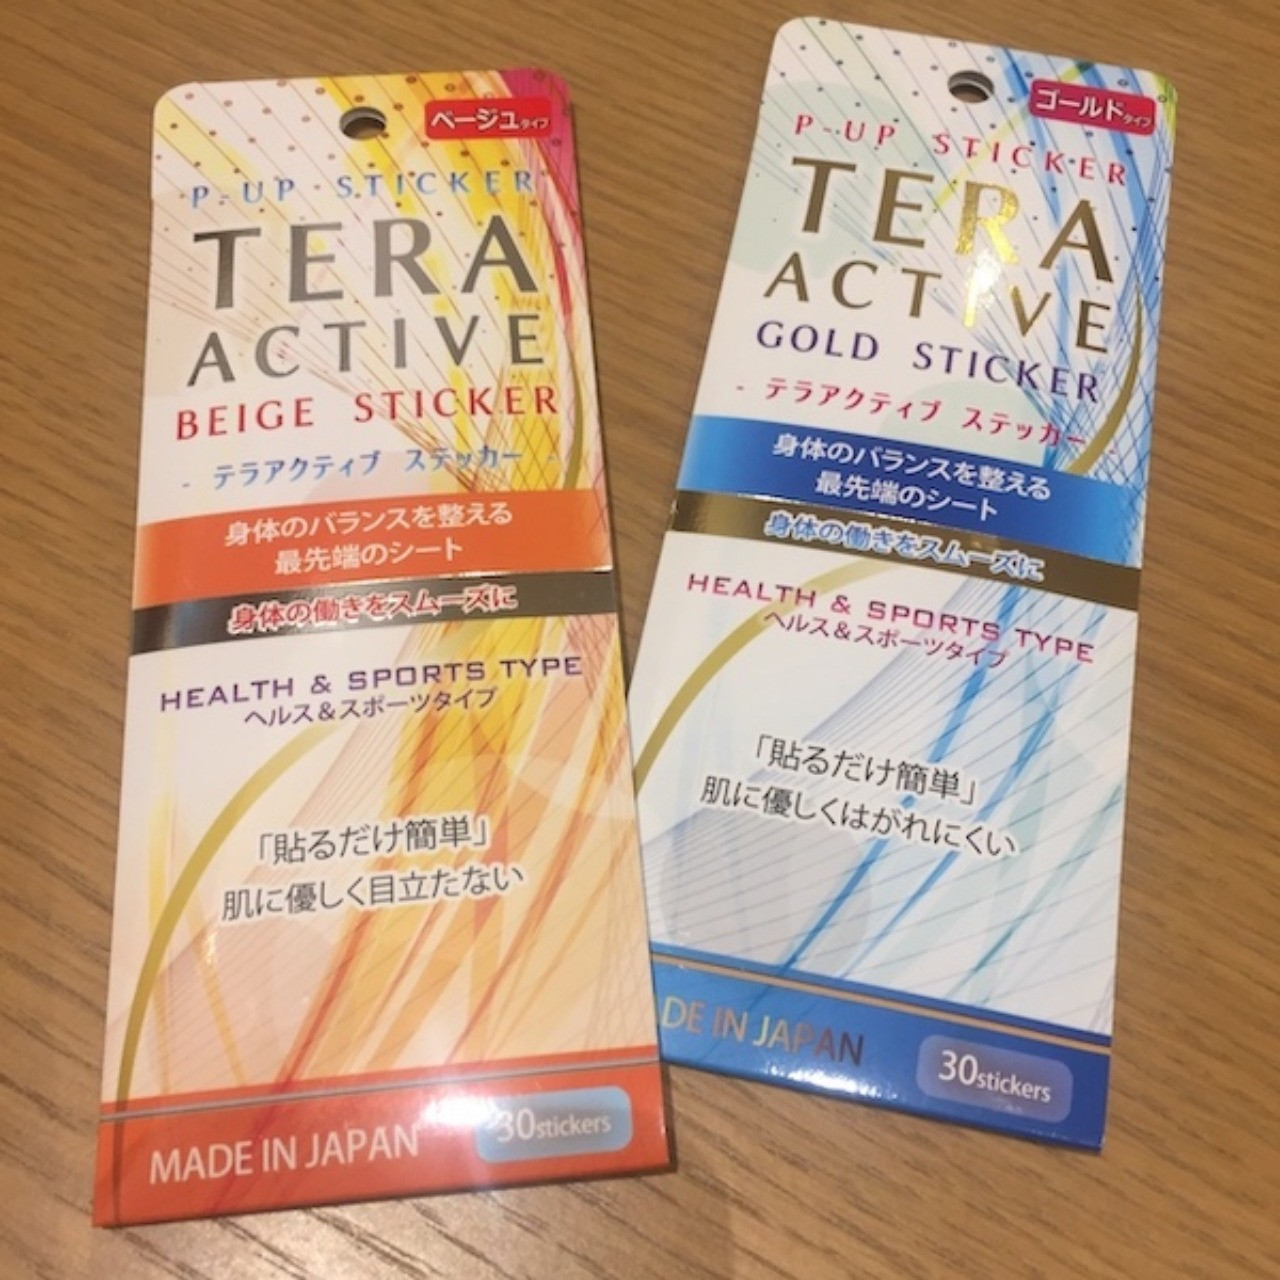 姫路の美容院Bereaでも取り扱っている「テラアクティブステッカー」が雑誌ananのカラダに良いものとして認定されています。